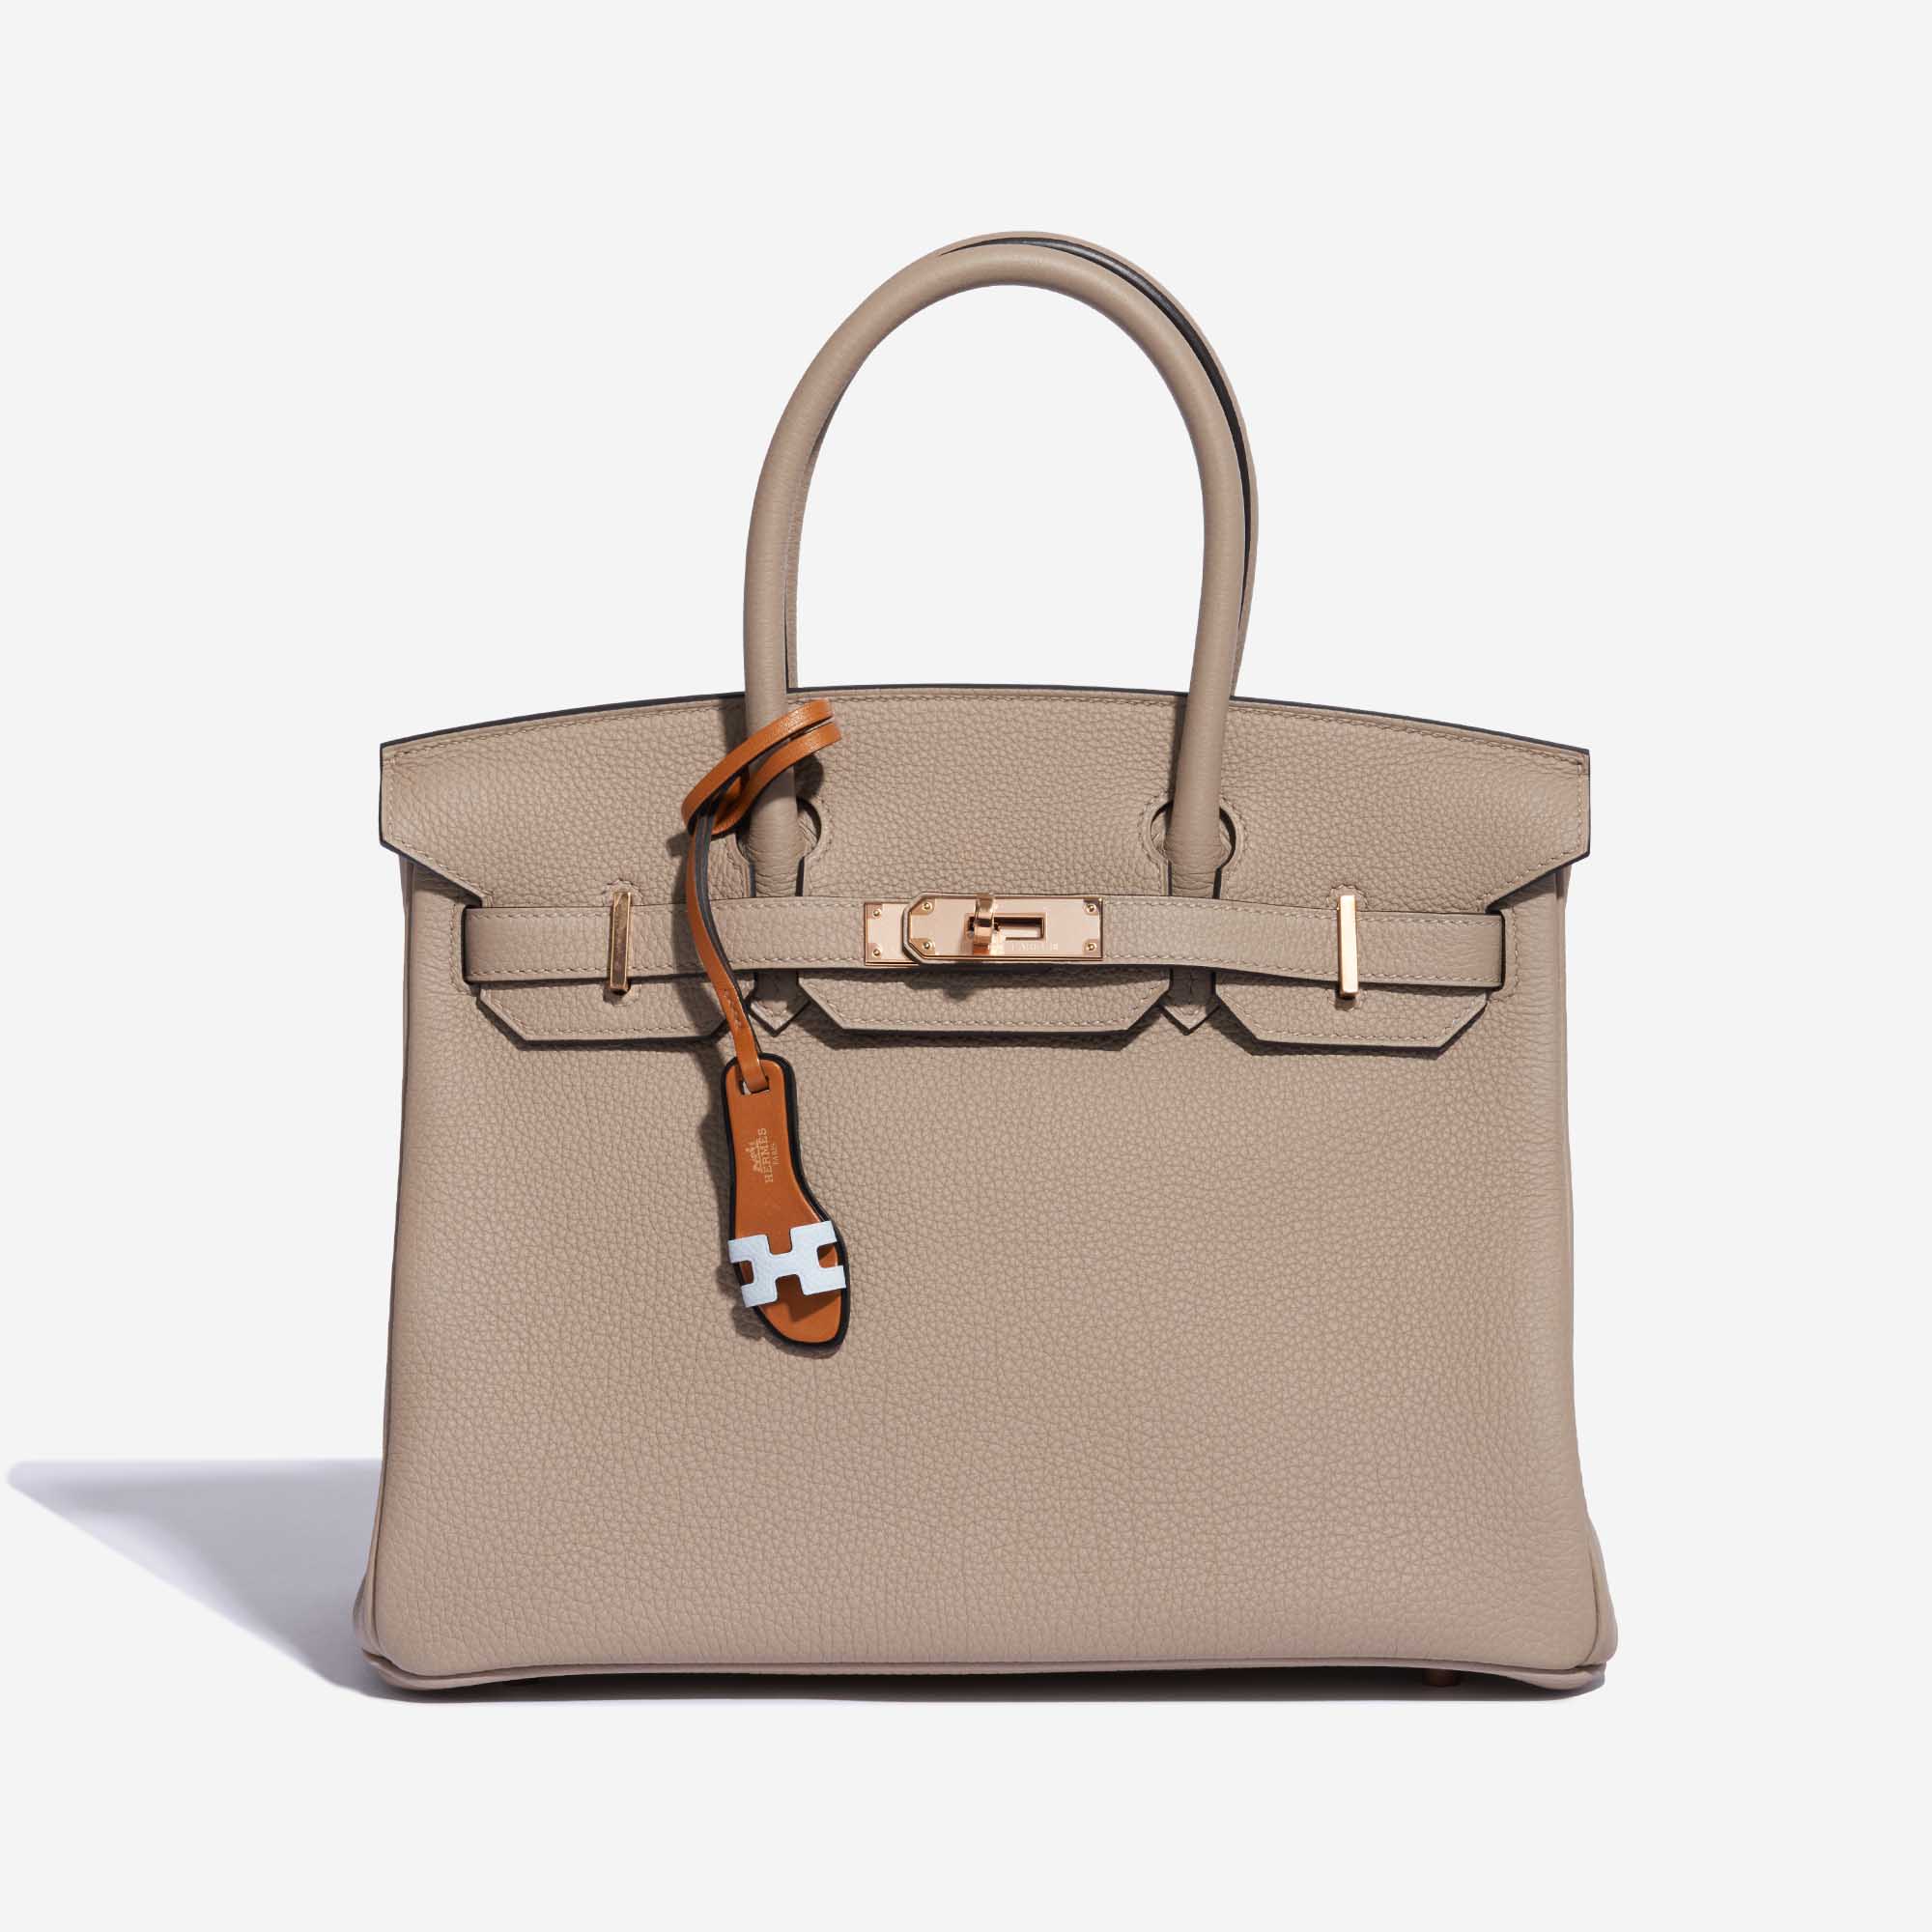 Pre-owned Hermès bag Oran Bag Charm PM Swift / Epsom Blue Brume / Gold / Black Black, Blue, Gold Detail | Sell your designer bag on Saclab.com